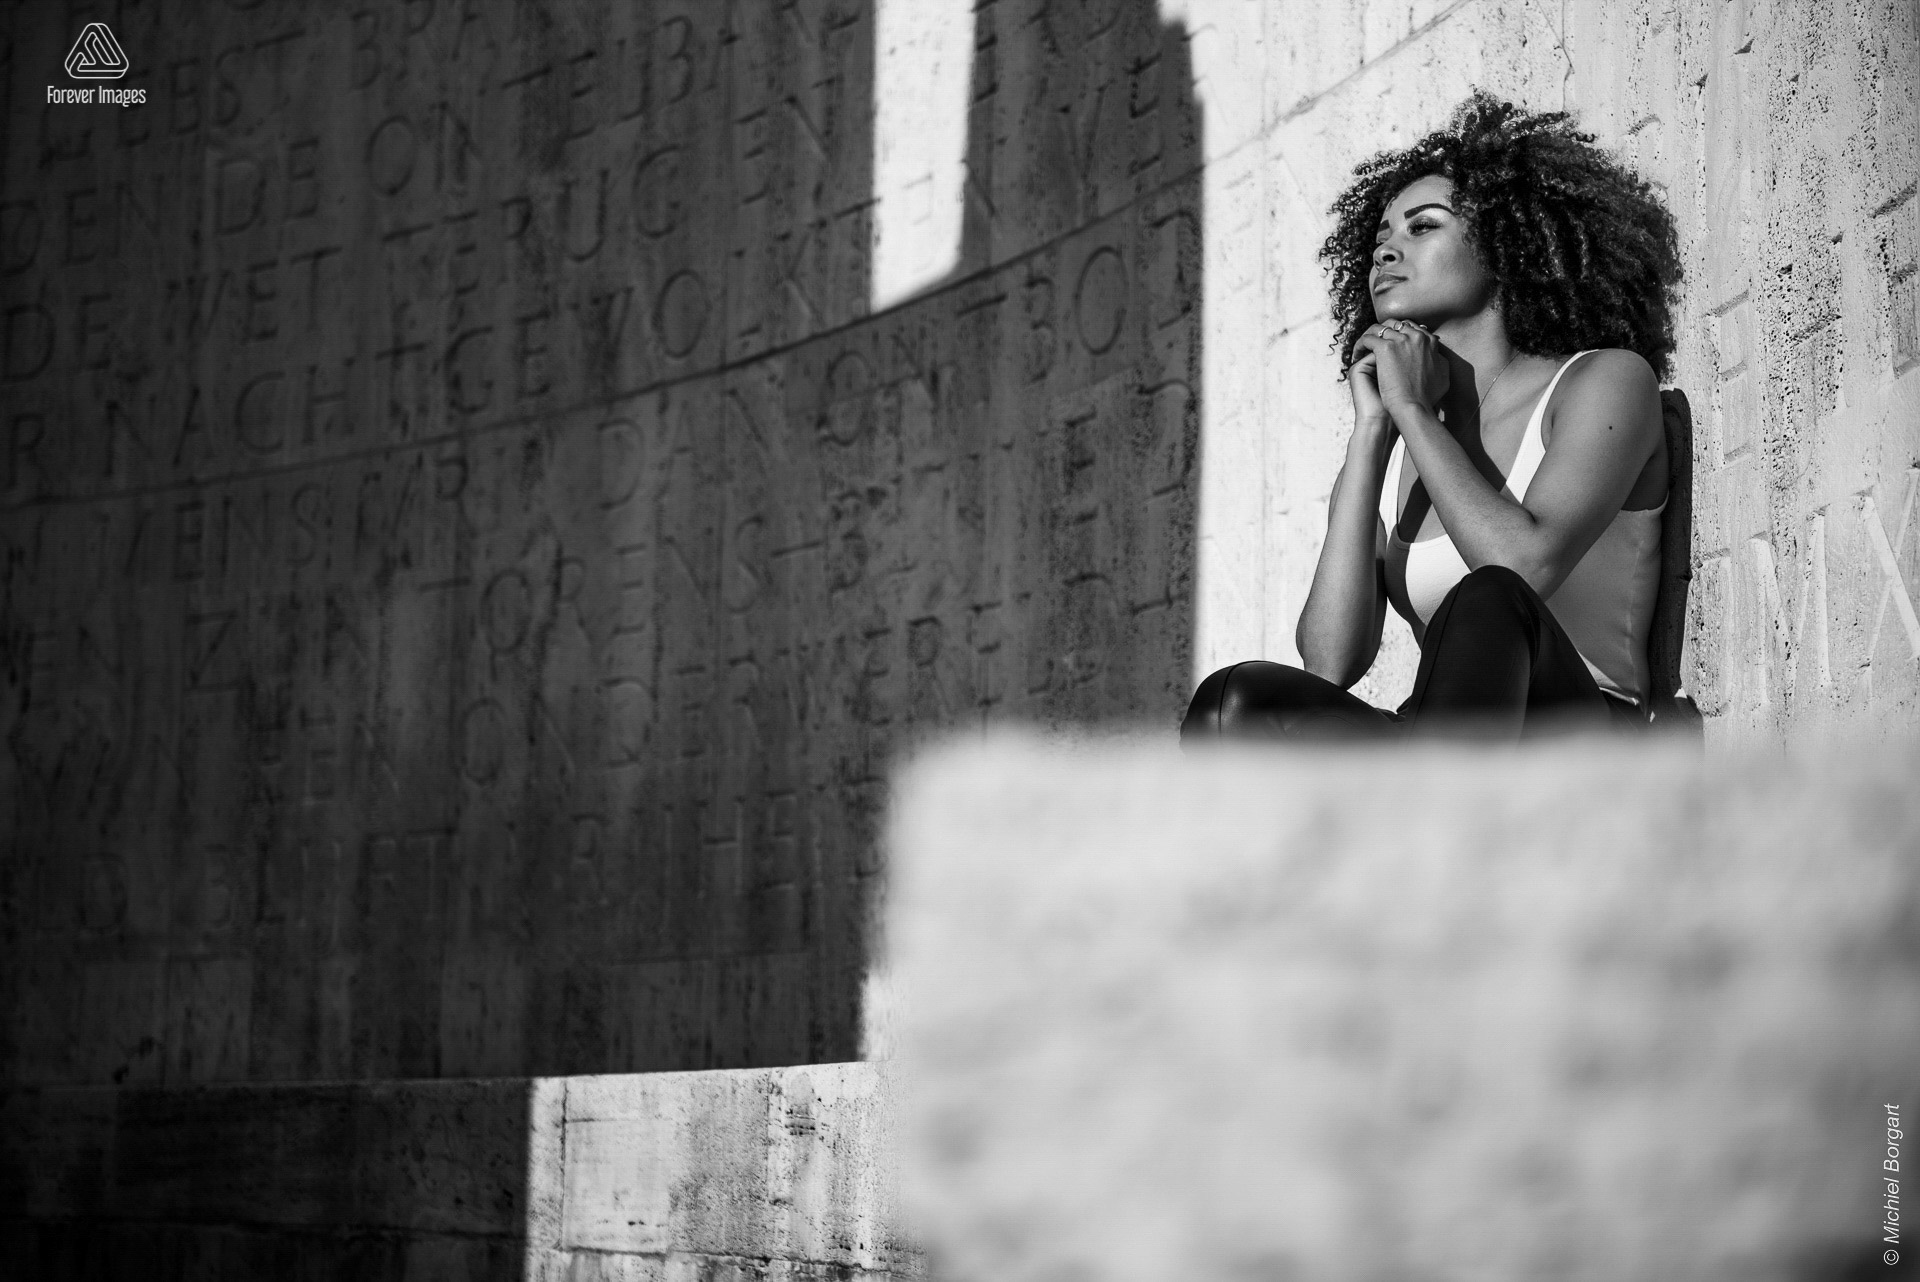 Portretfoto zwart-wit In Christ Alone | Channah Hewitt De Dam Amsterdam Nationaal Monument | Portretfotograaf Michiel Borgart - Forever Images.